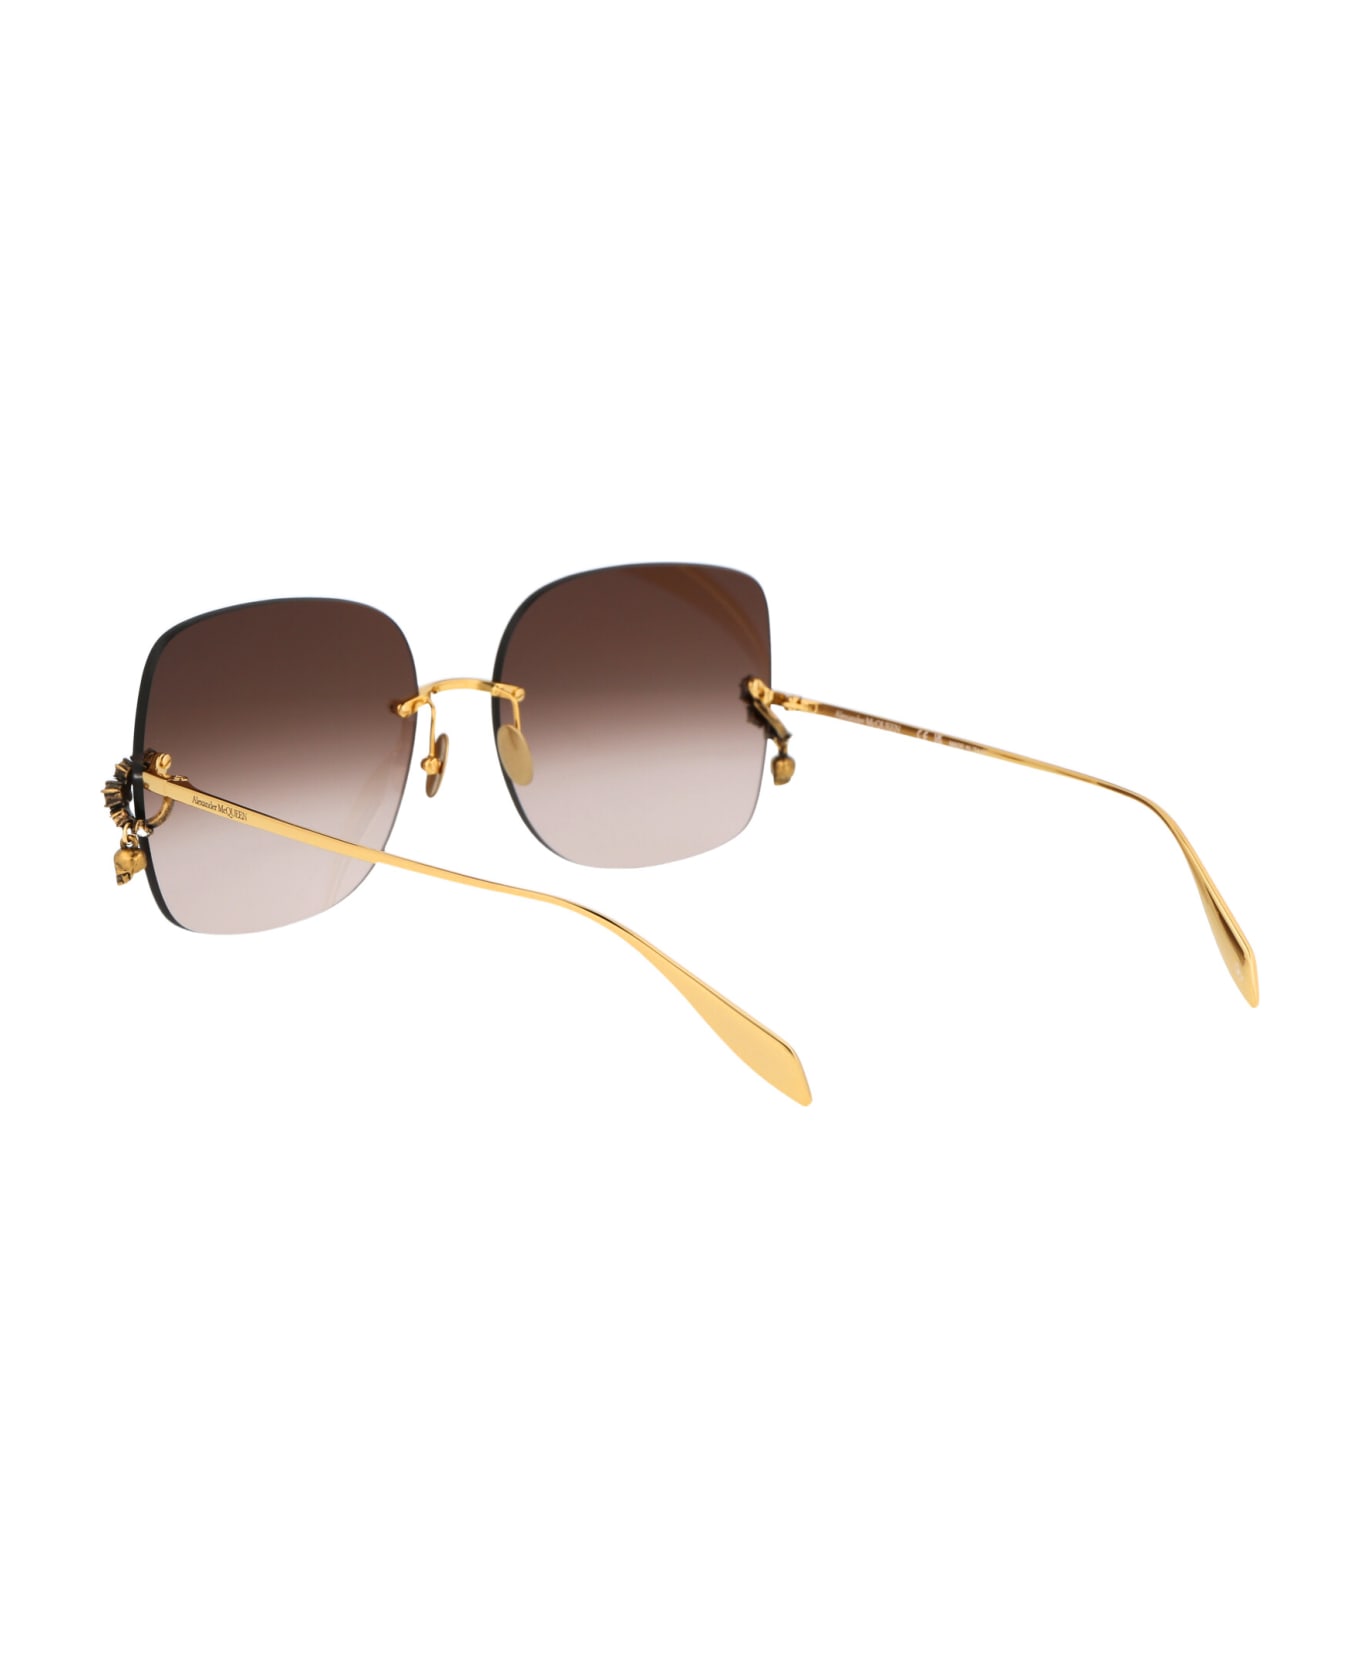 Alexander McQueen Eyewear Am0390s Sunglasses - 002 GOLD GOLD BROWN サングラス